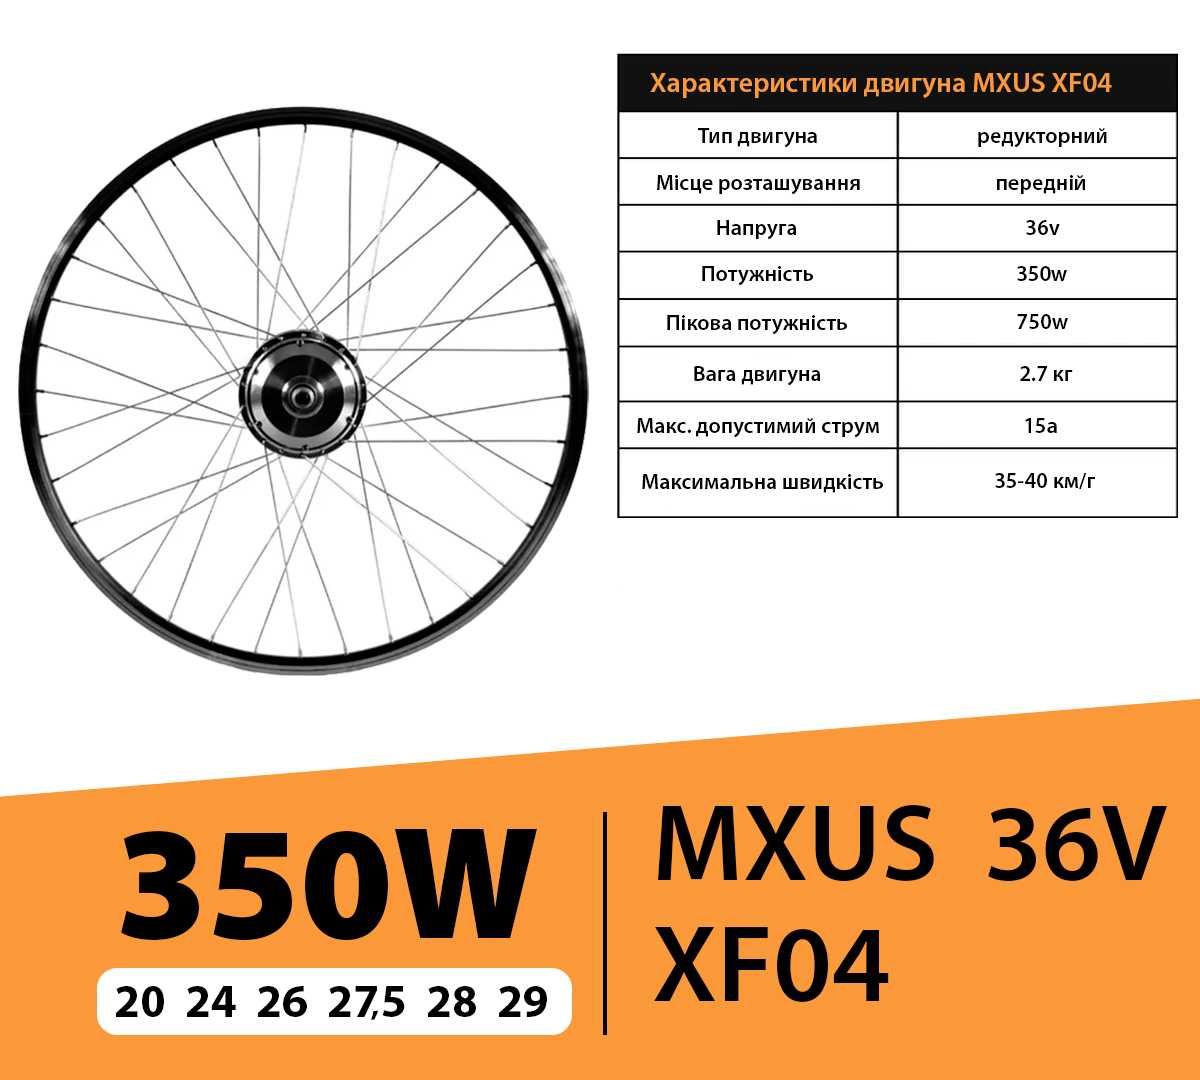 MXUS! ПОВНИЙ 10ah редукторний електронабір для велосипеда,электронабор